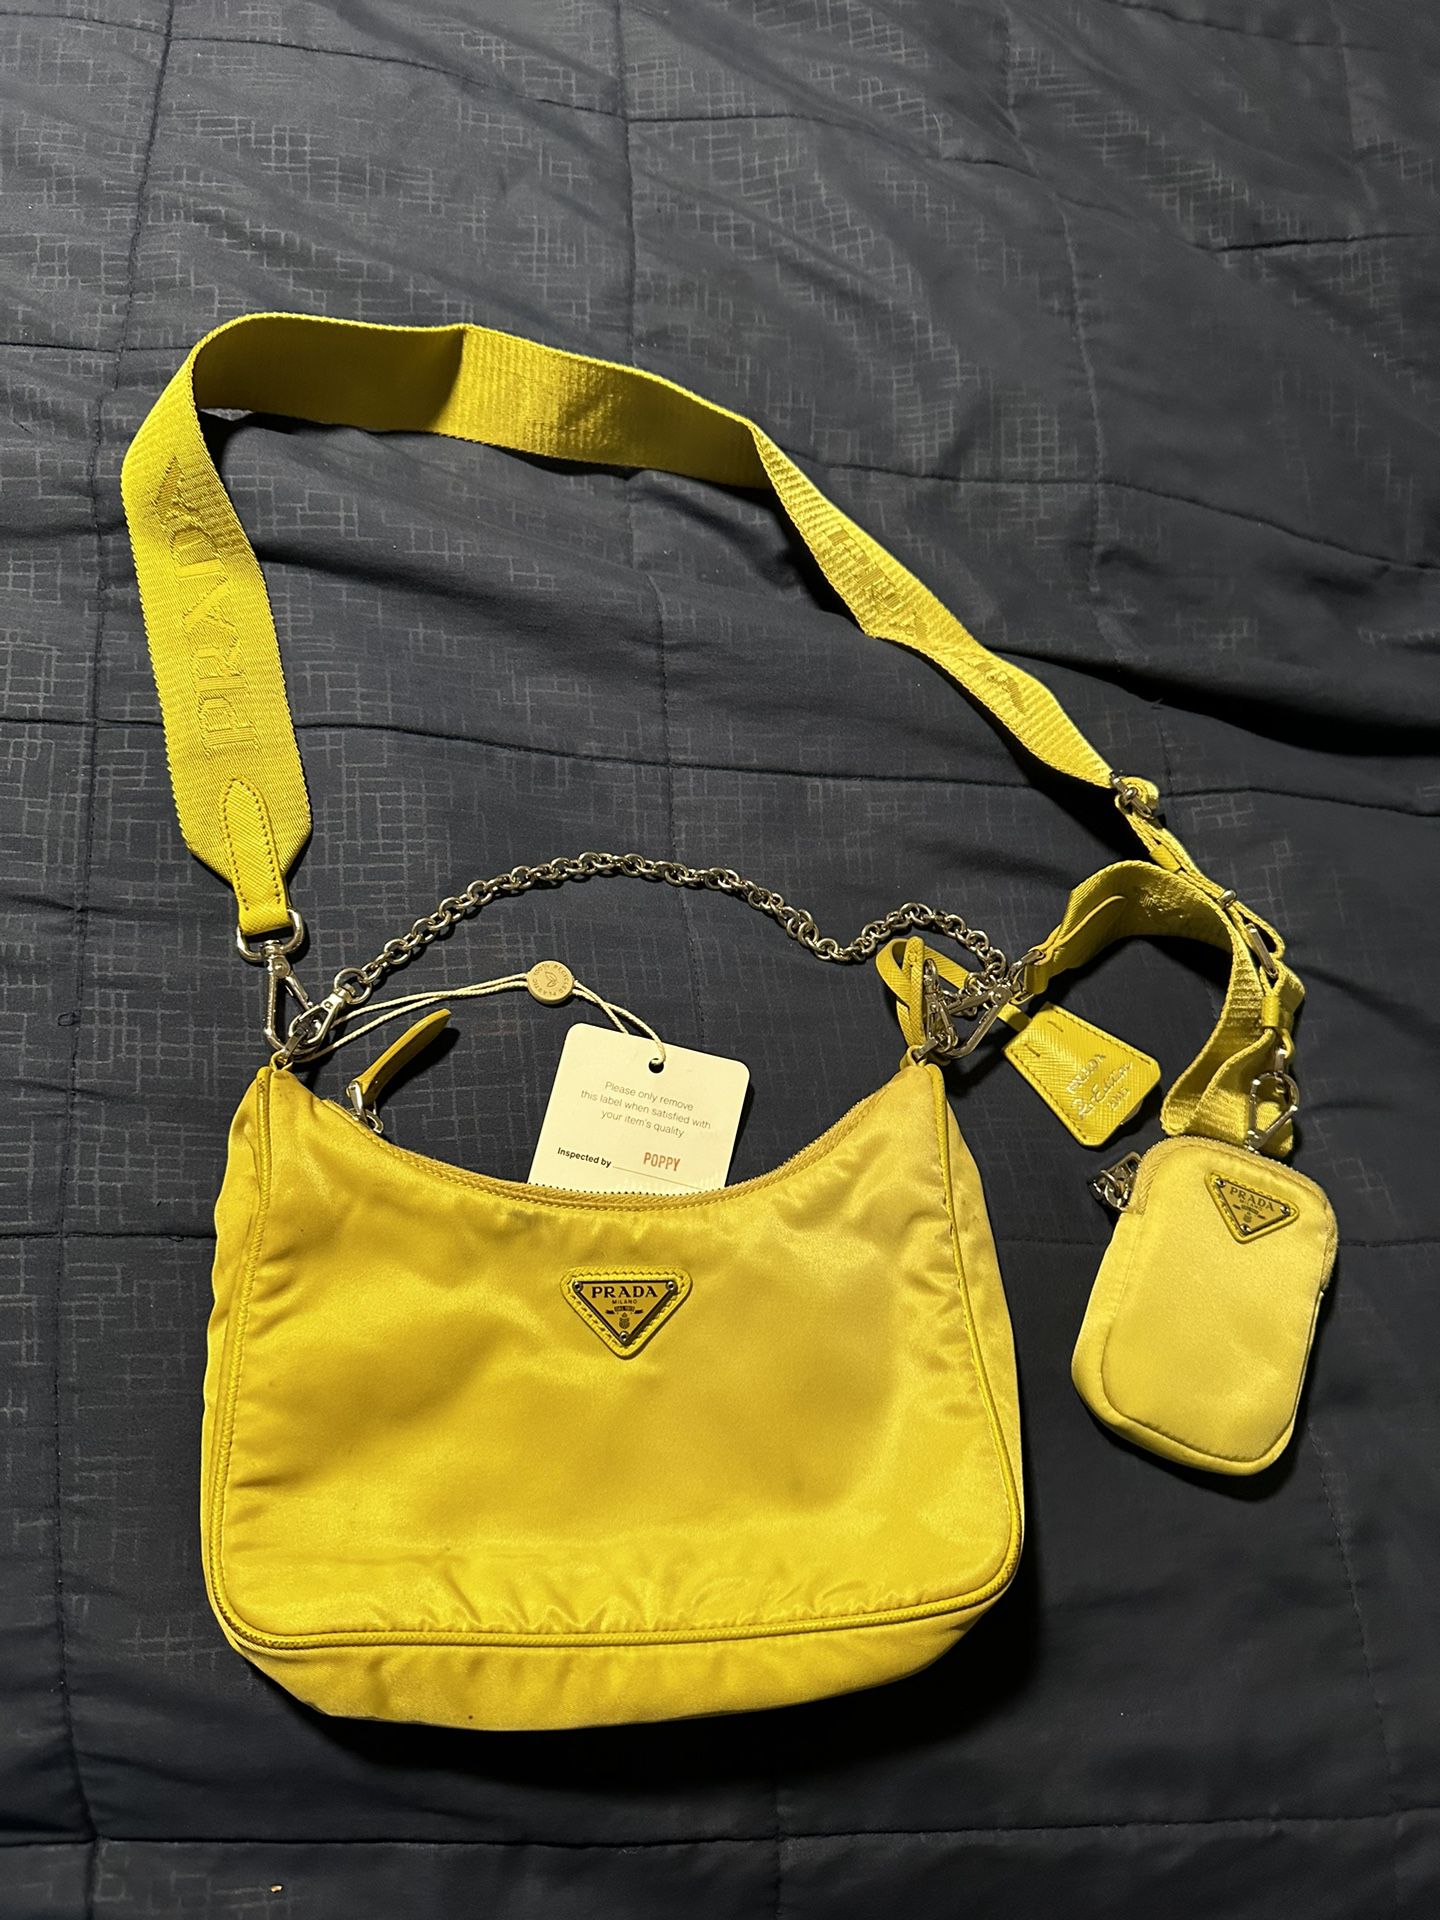 Prada Re-edition 2005 Bag